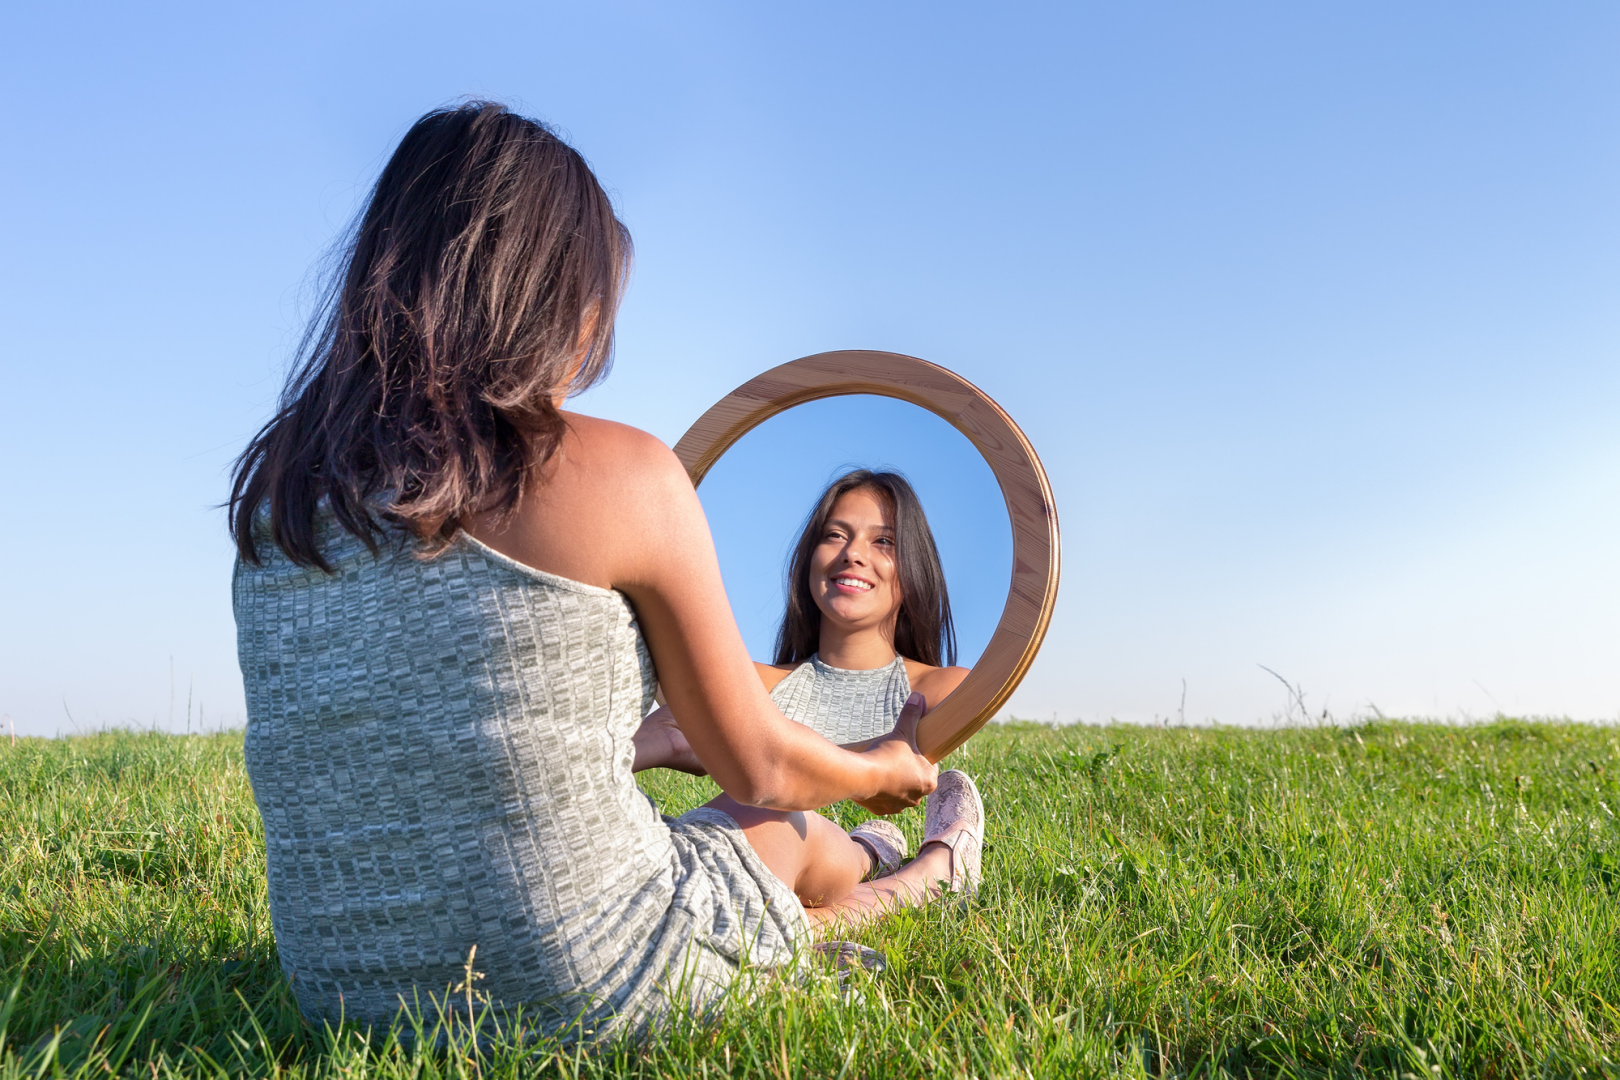 Люди любят наблюдать за людьми. О женщина. Принятие себя и любовь к себе. Самооценка. Отражение в зеркале.